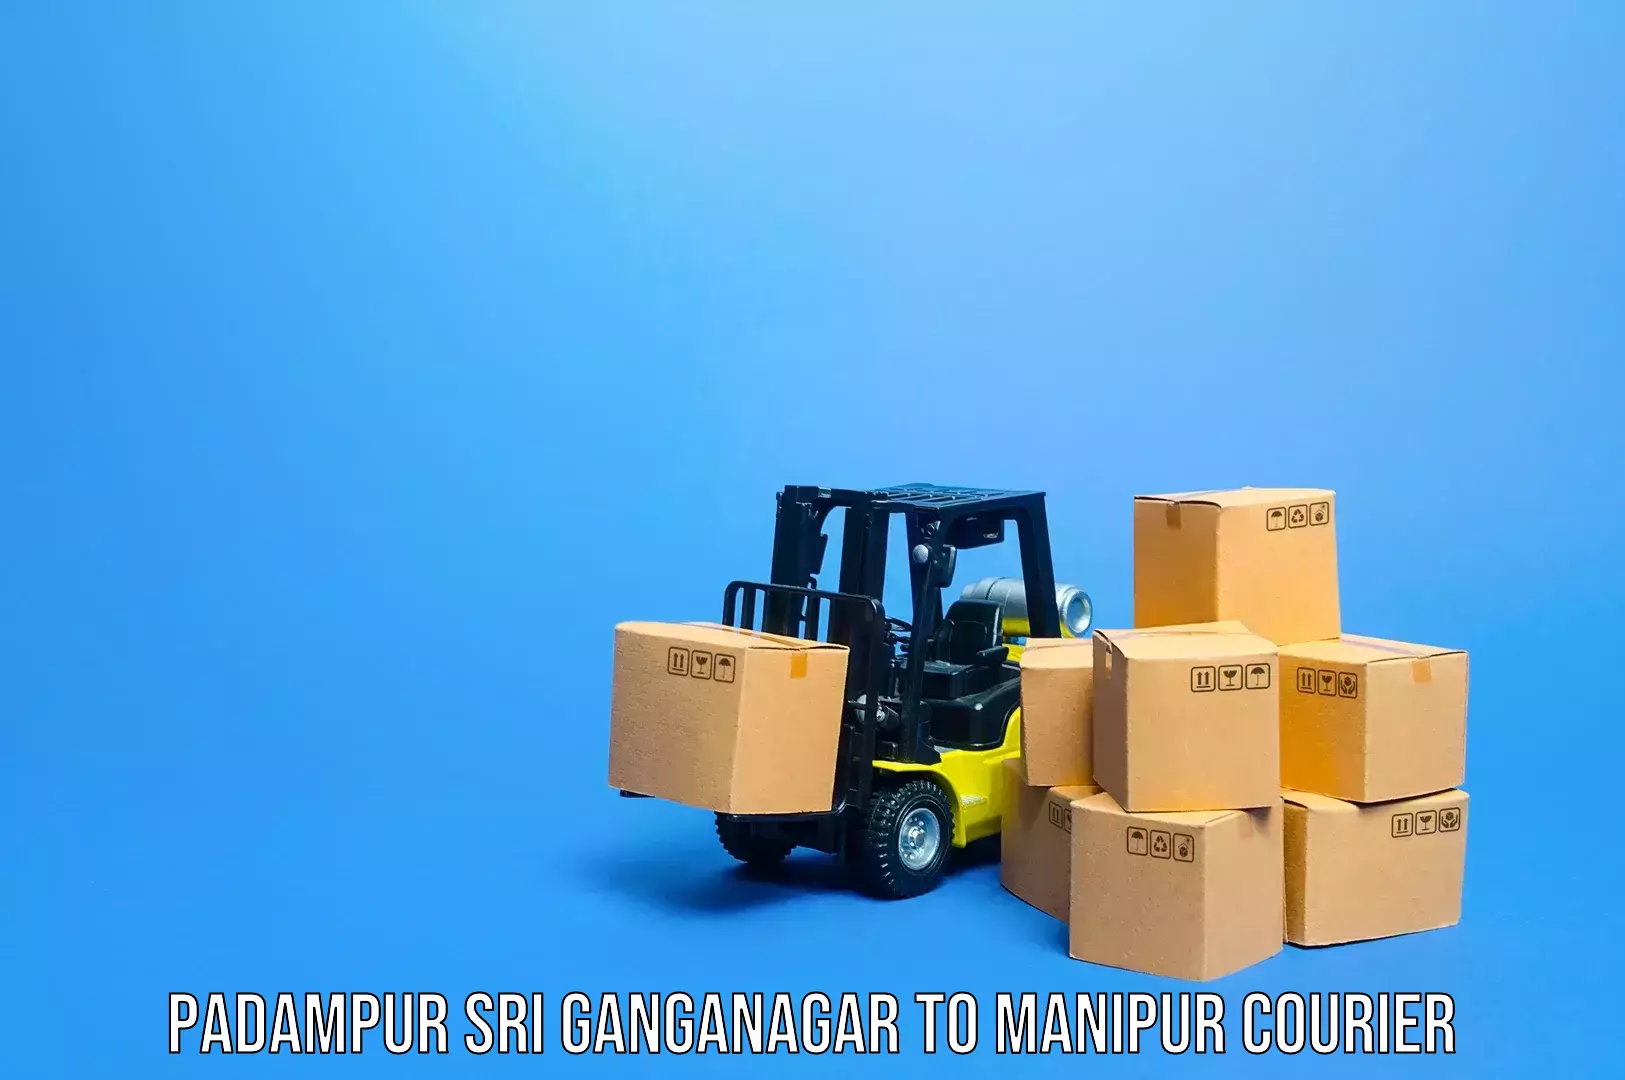 Luggage shipping service Padampur Sri Ganganagar to Moirang